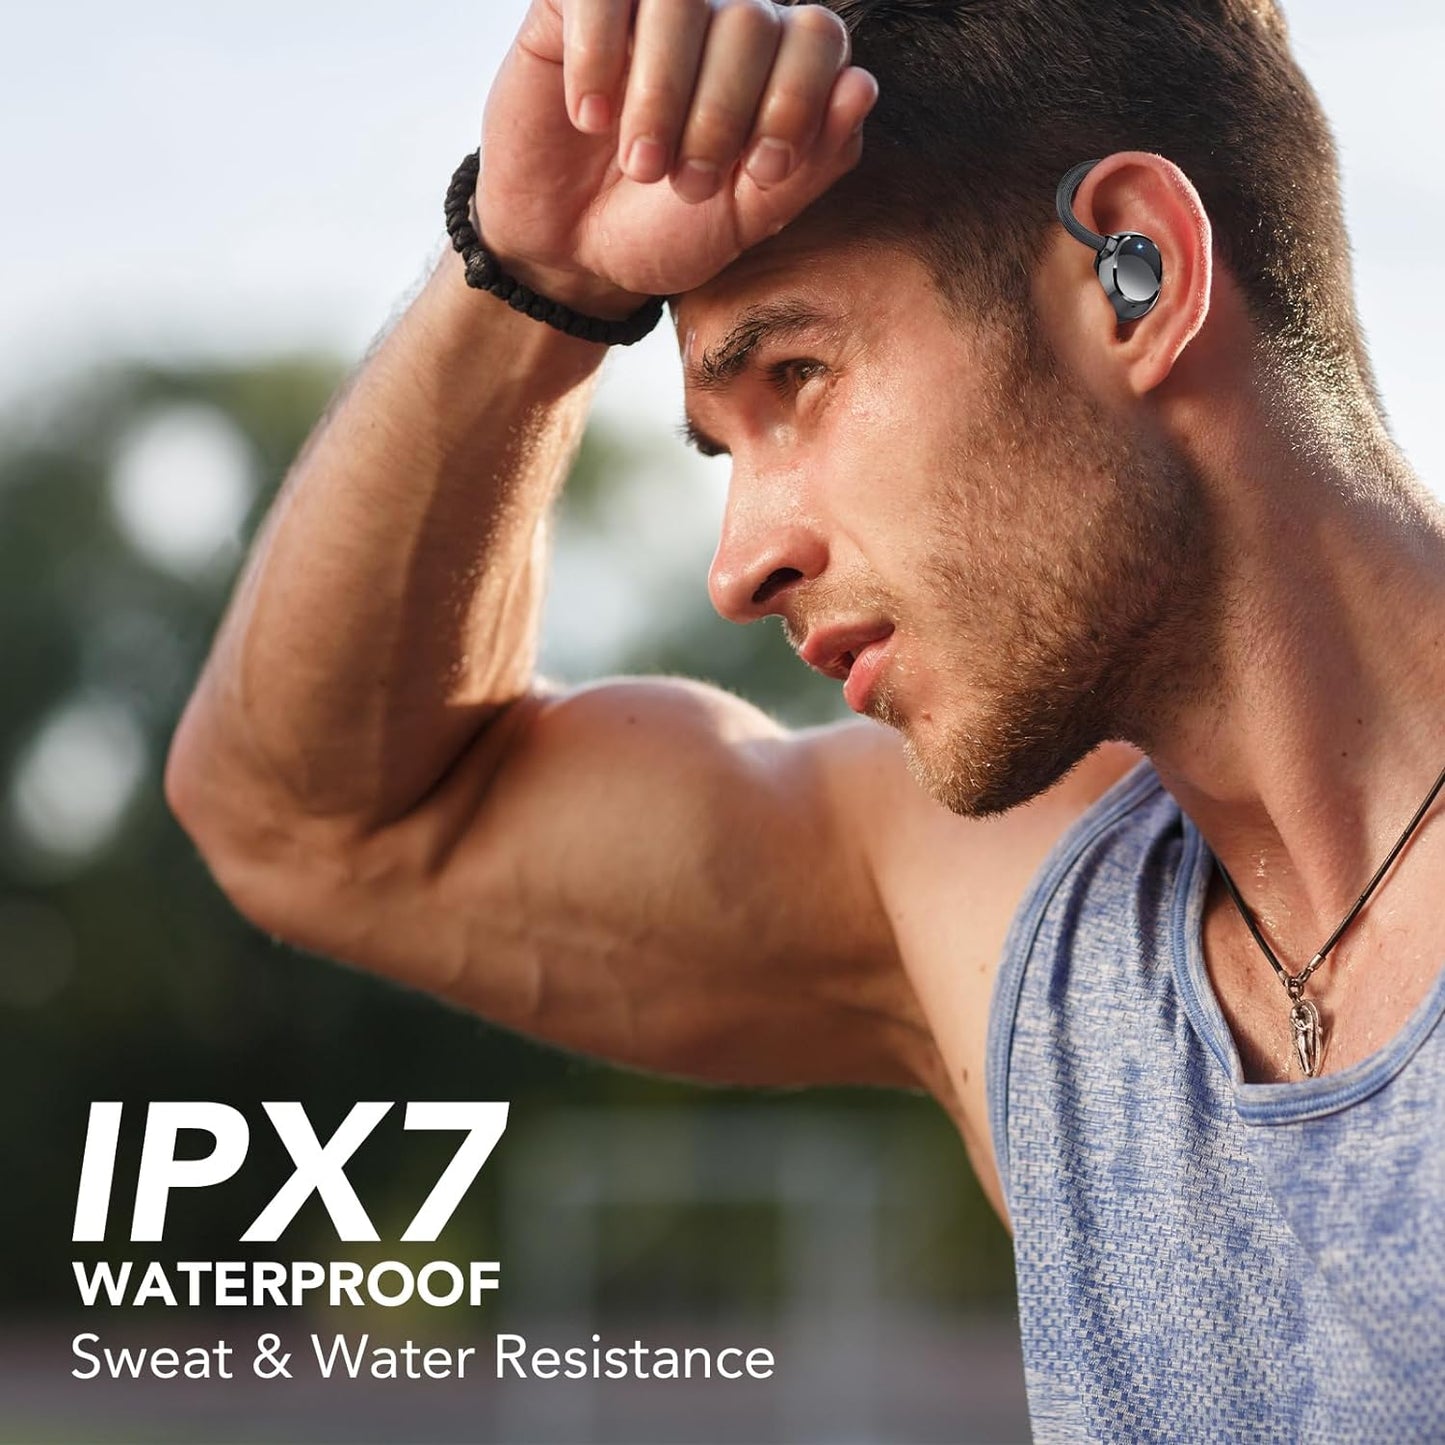 Bluetooth Kopfhörer Sport schwarz In Ear Kabellos 120h Akkuleistung IPX7 Wasserdicht LED Anzeige